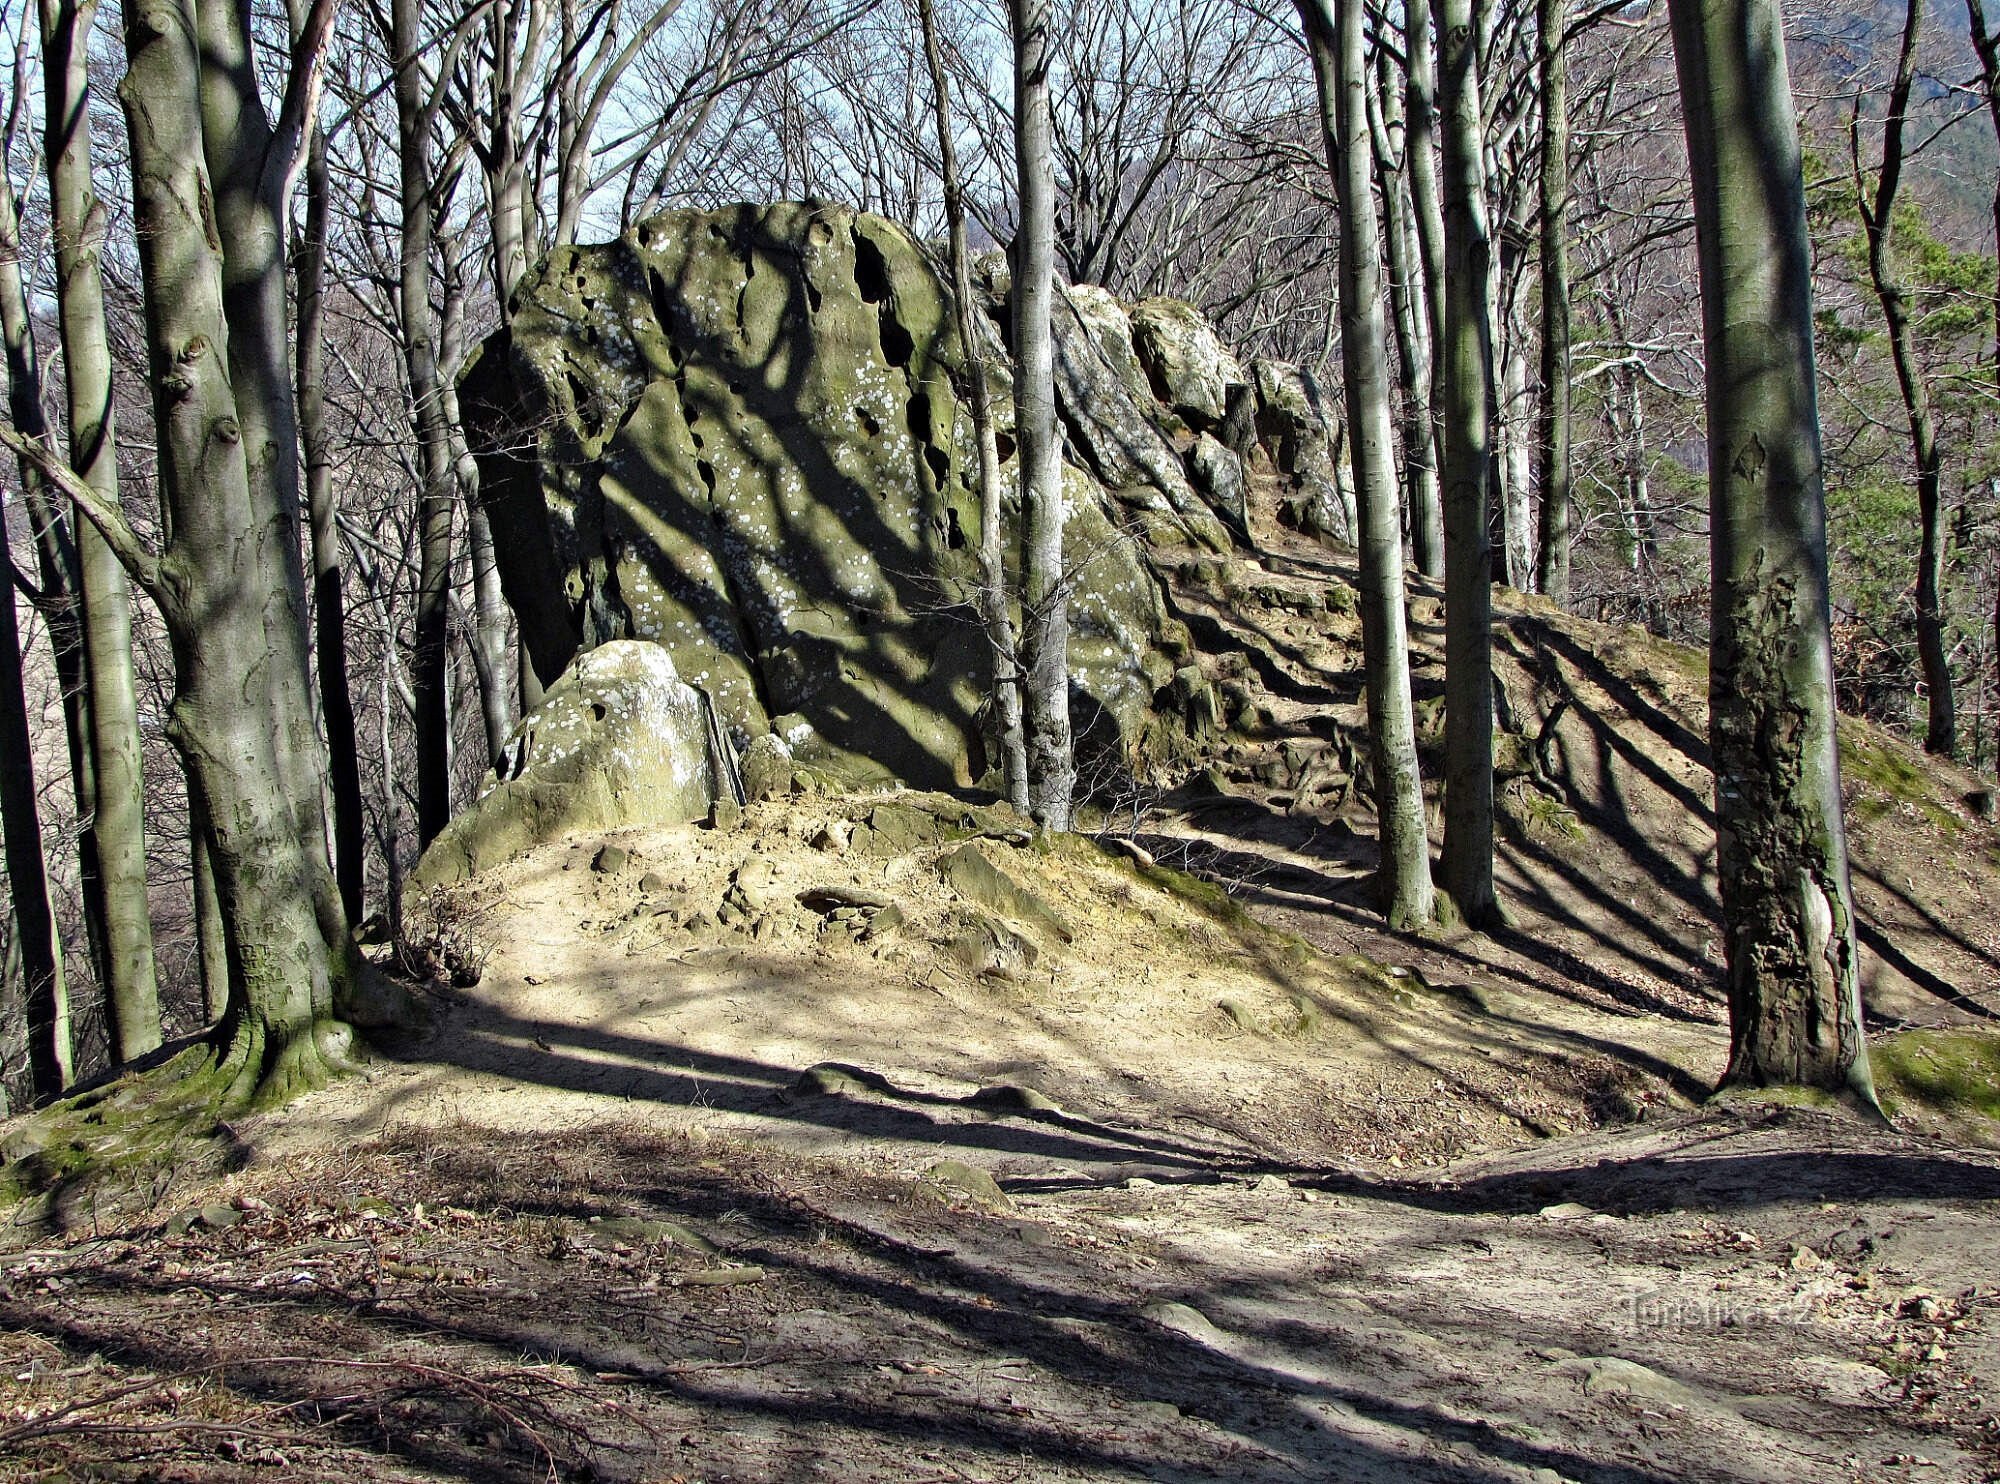 skalna formacija Čertův kámen in zemljišče nekdanjega gradu